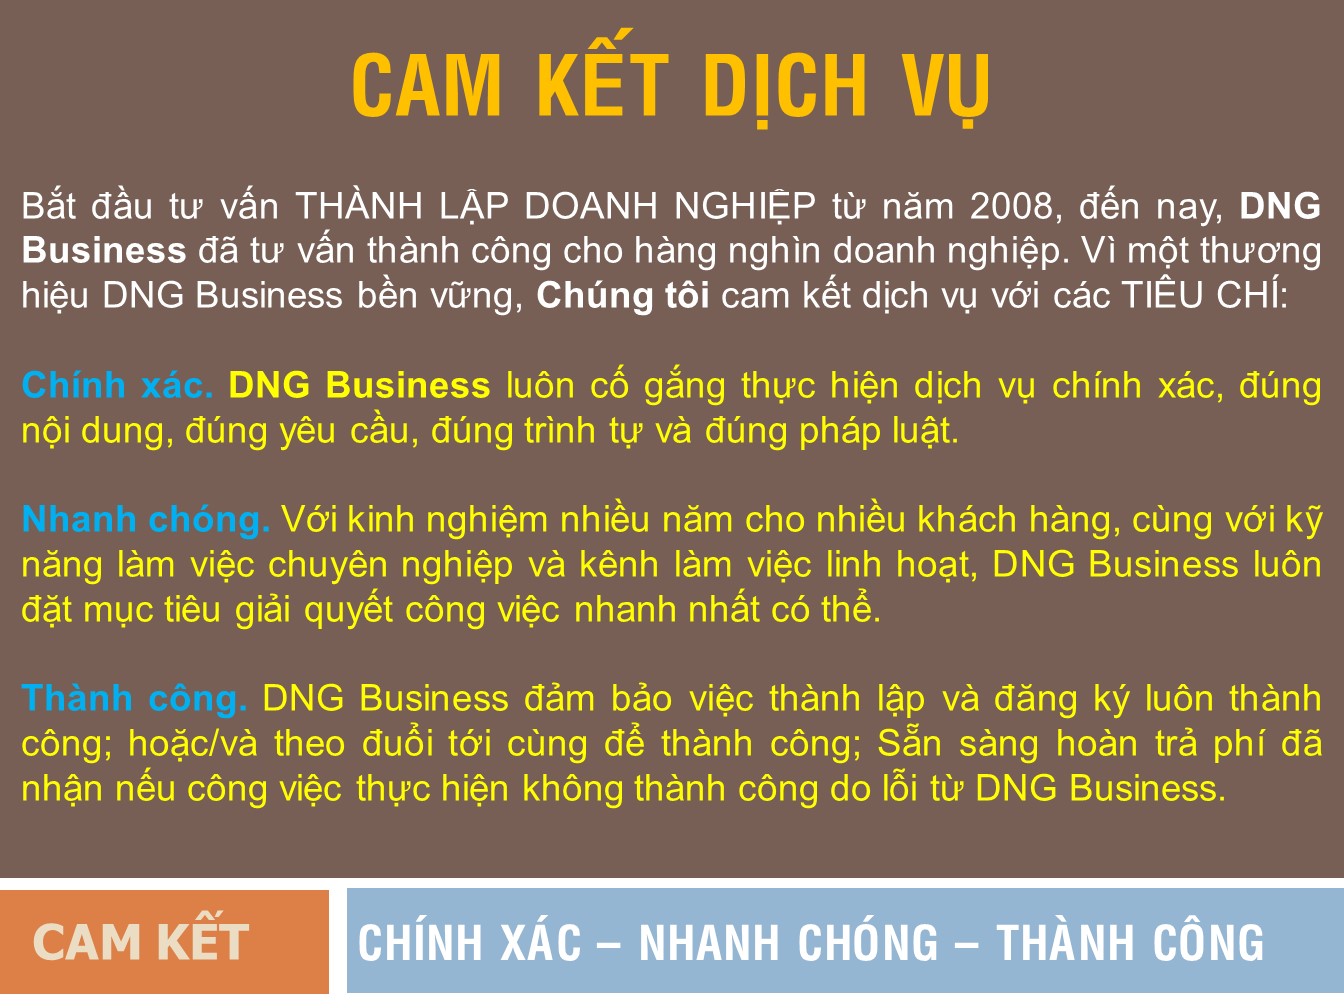 Dịch vụ thành lập công ty tại Hồ Chí Minh